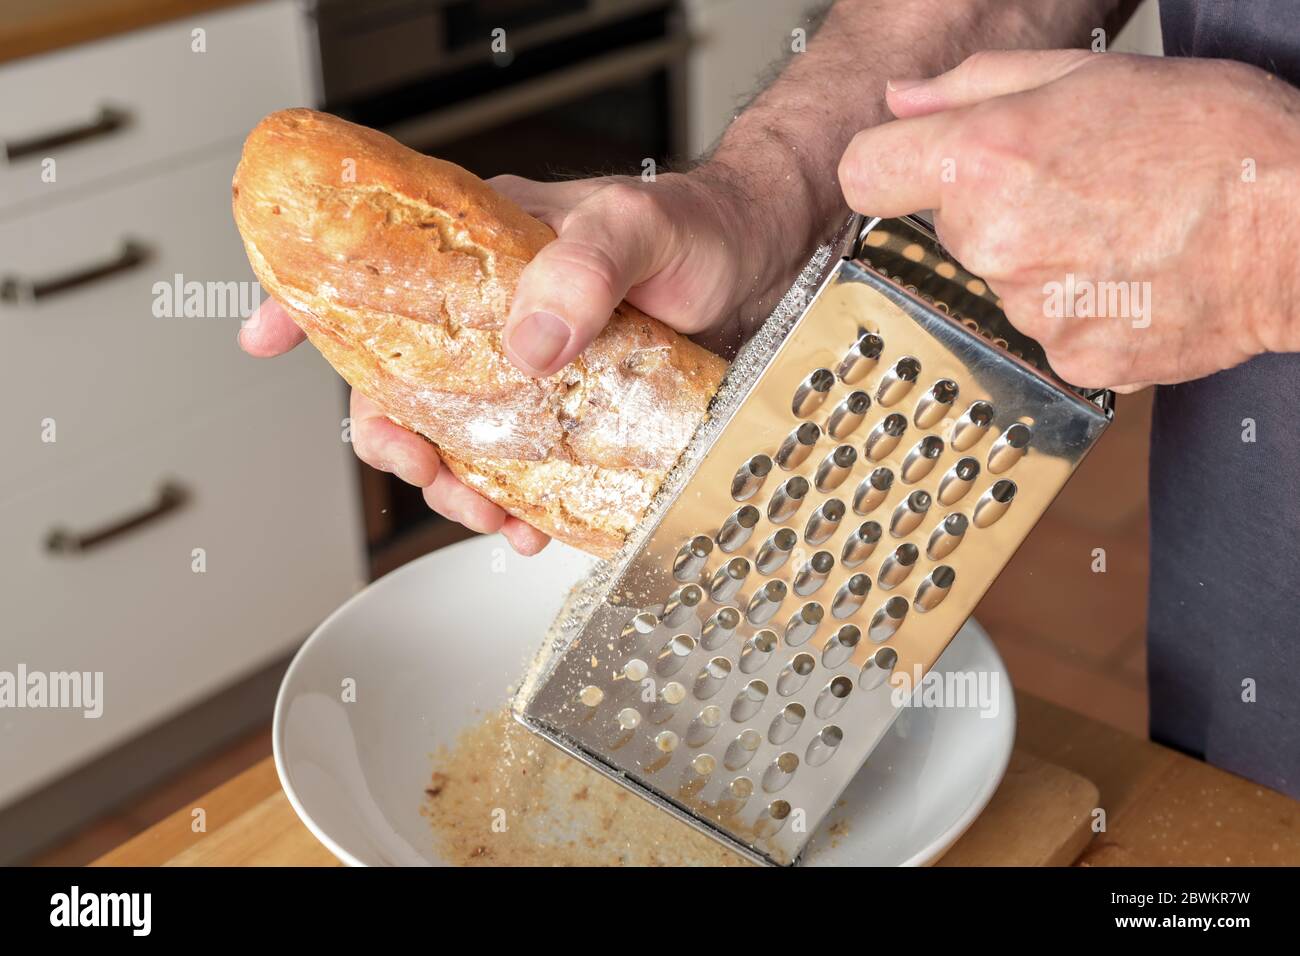 L'uomo sta grattugiando il pane duro su una grattugia per ottenere